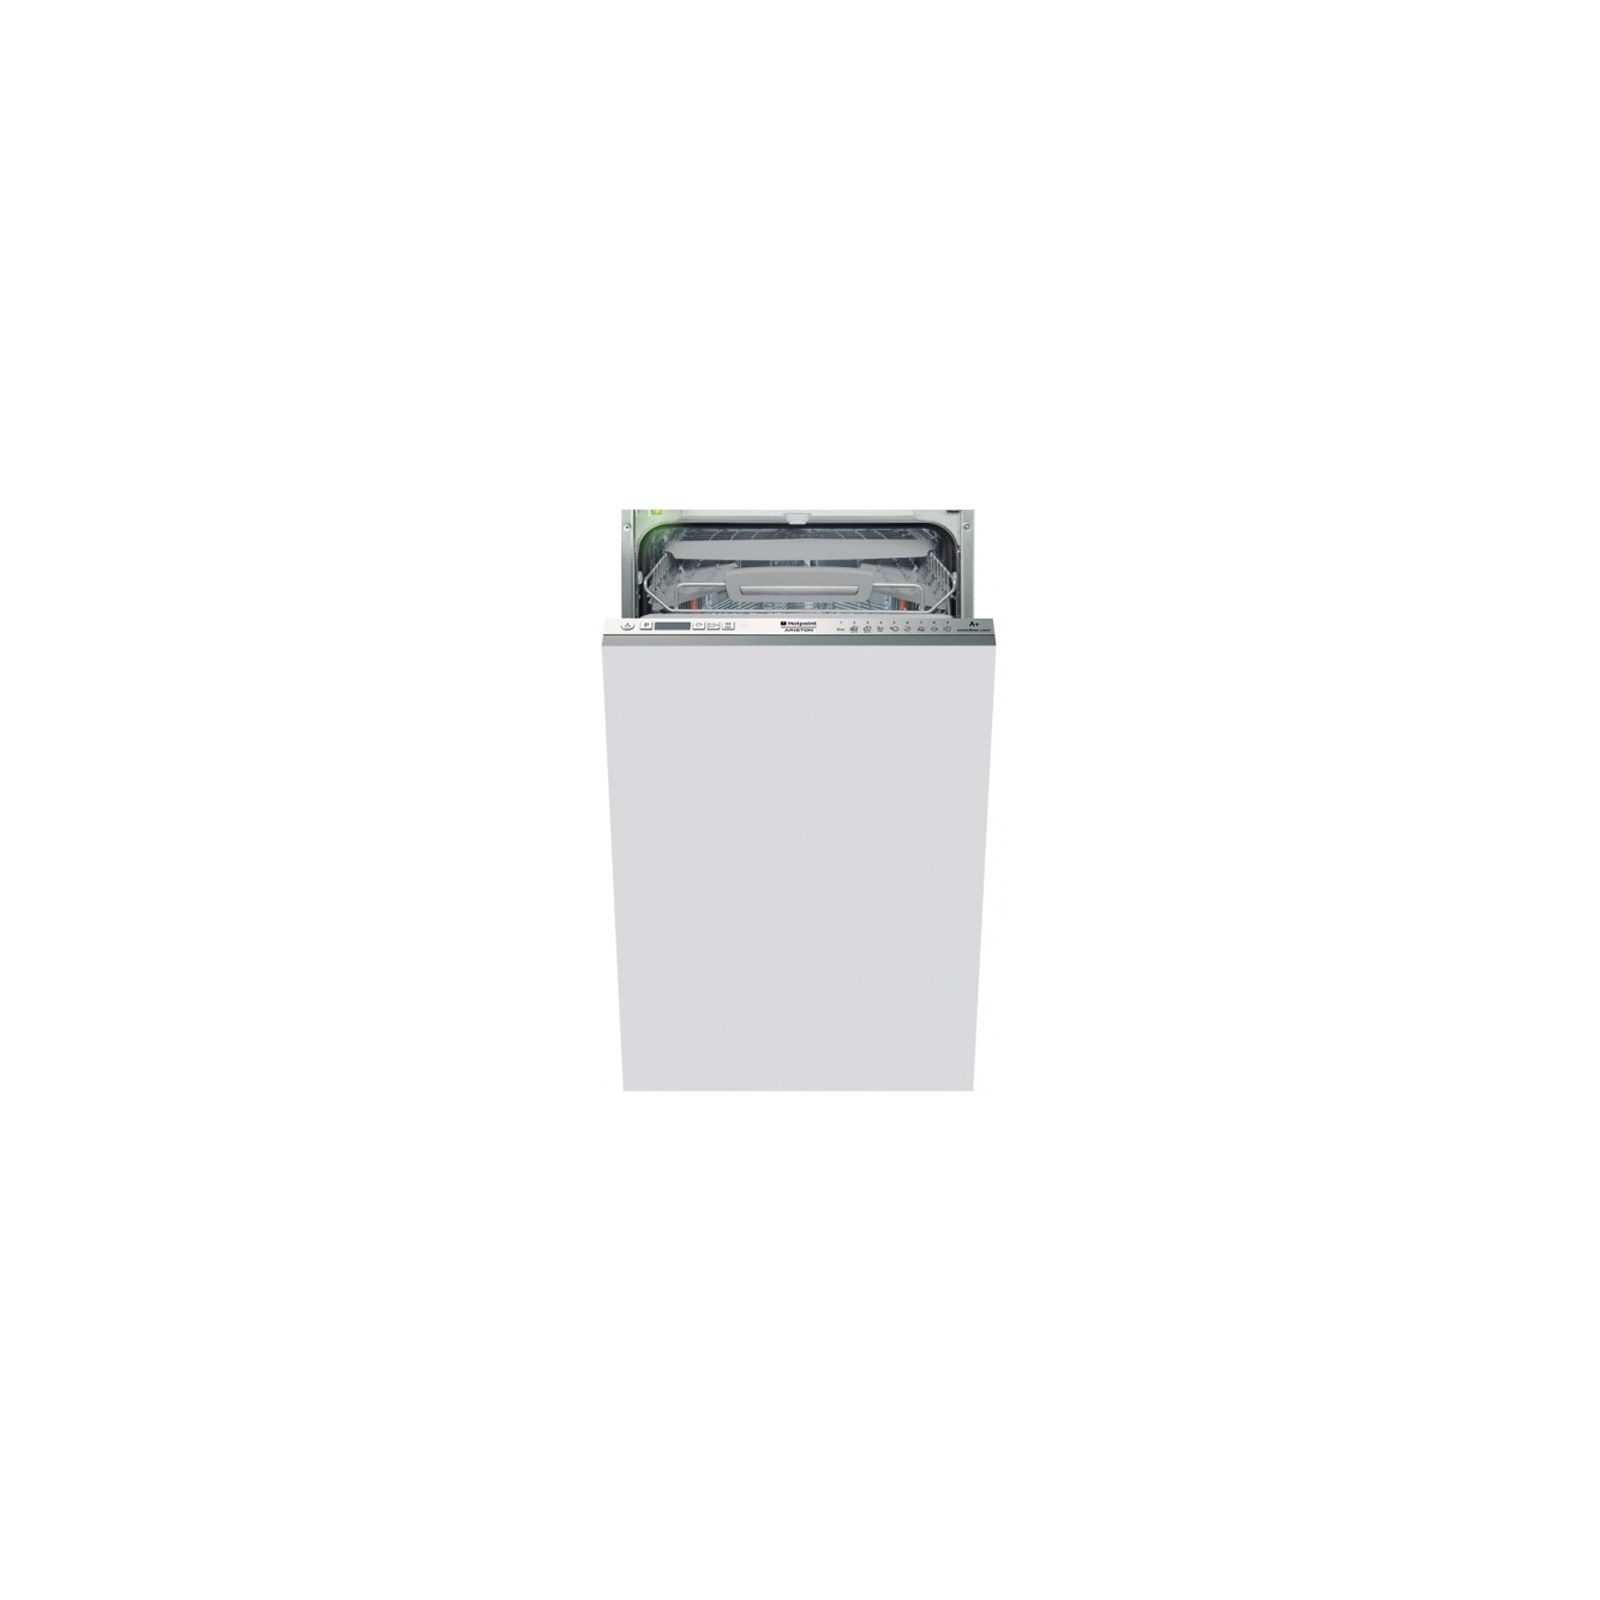 Посудомоечная машина Hotpoint-Ariston LSTF 9H114 CL EU